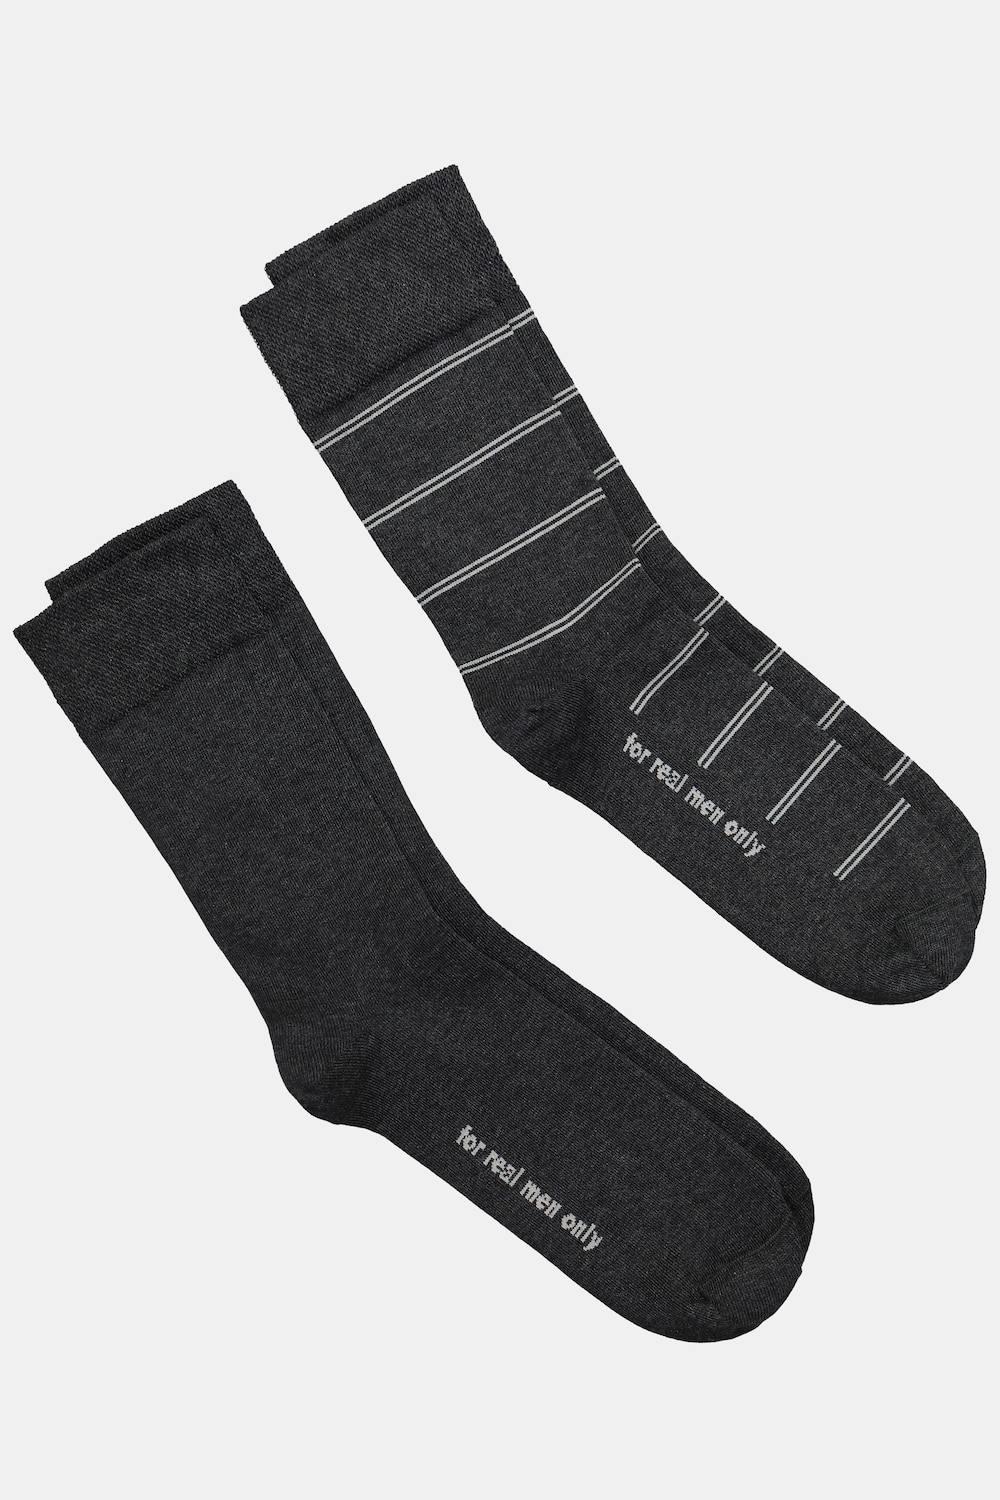 Große Größen JP1880 Socken, Herren, grau, Größe: 47-50, Baumwolle/Synthetische Fasern, JP1880 von JP1880